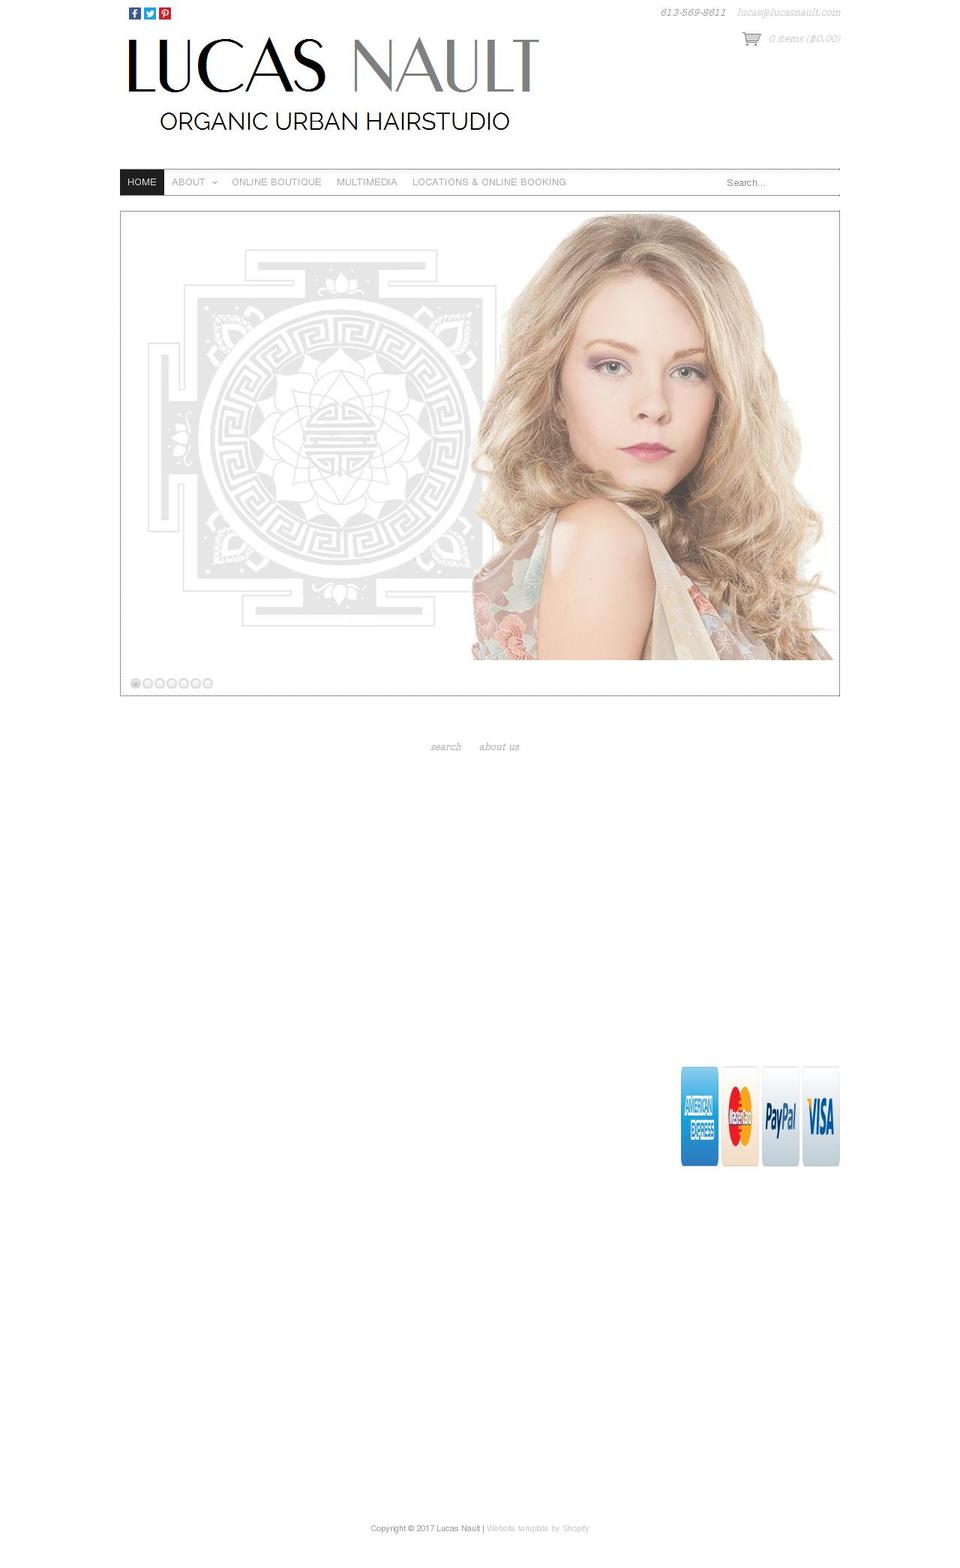 lucasnault.com shopify website screenshot